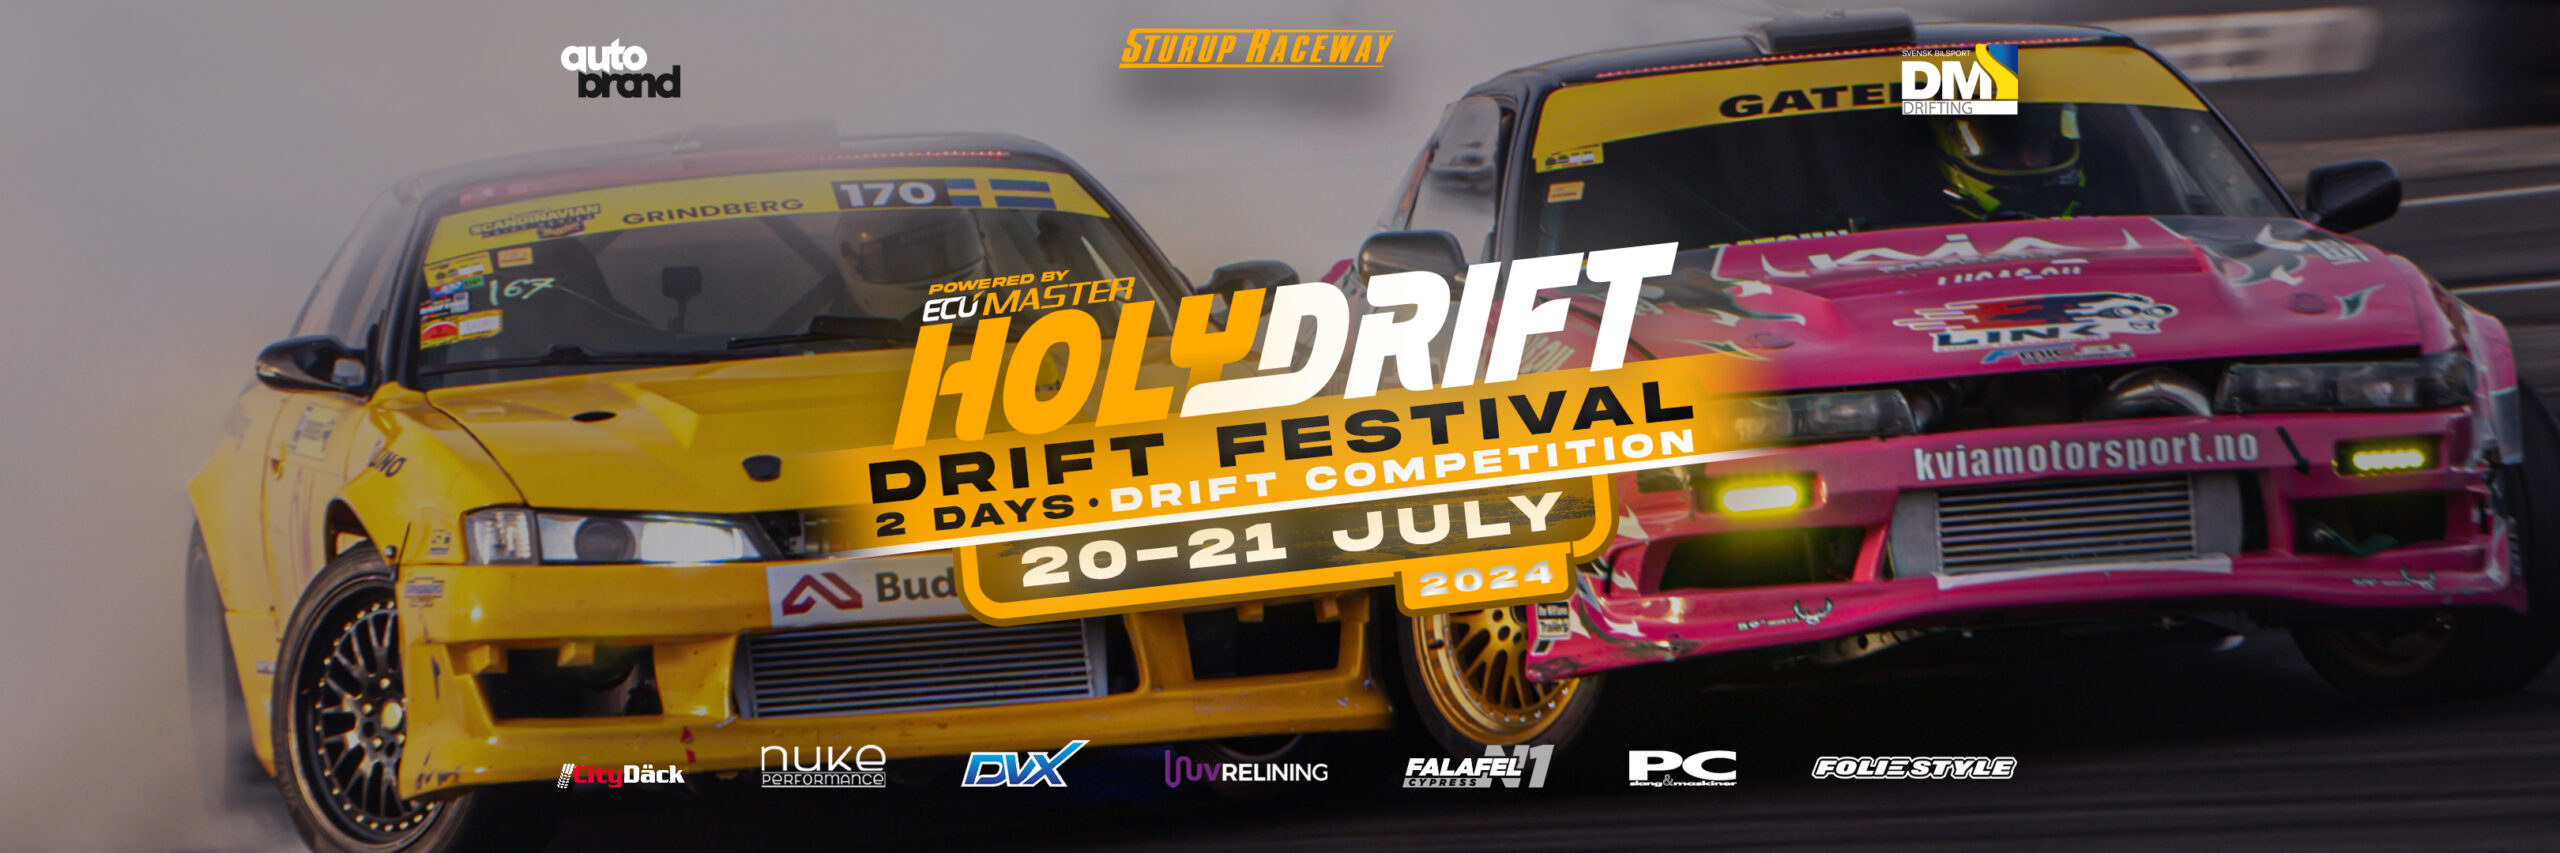 HOLYDRIFT – 2 dages drift festival